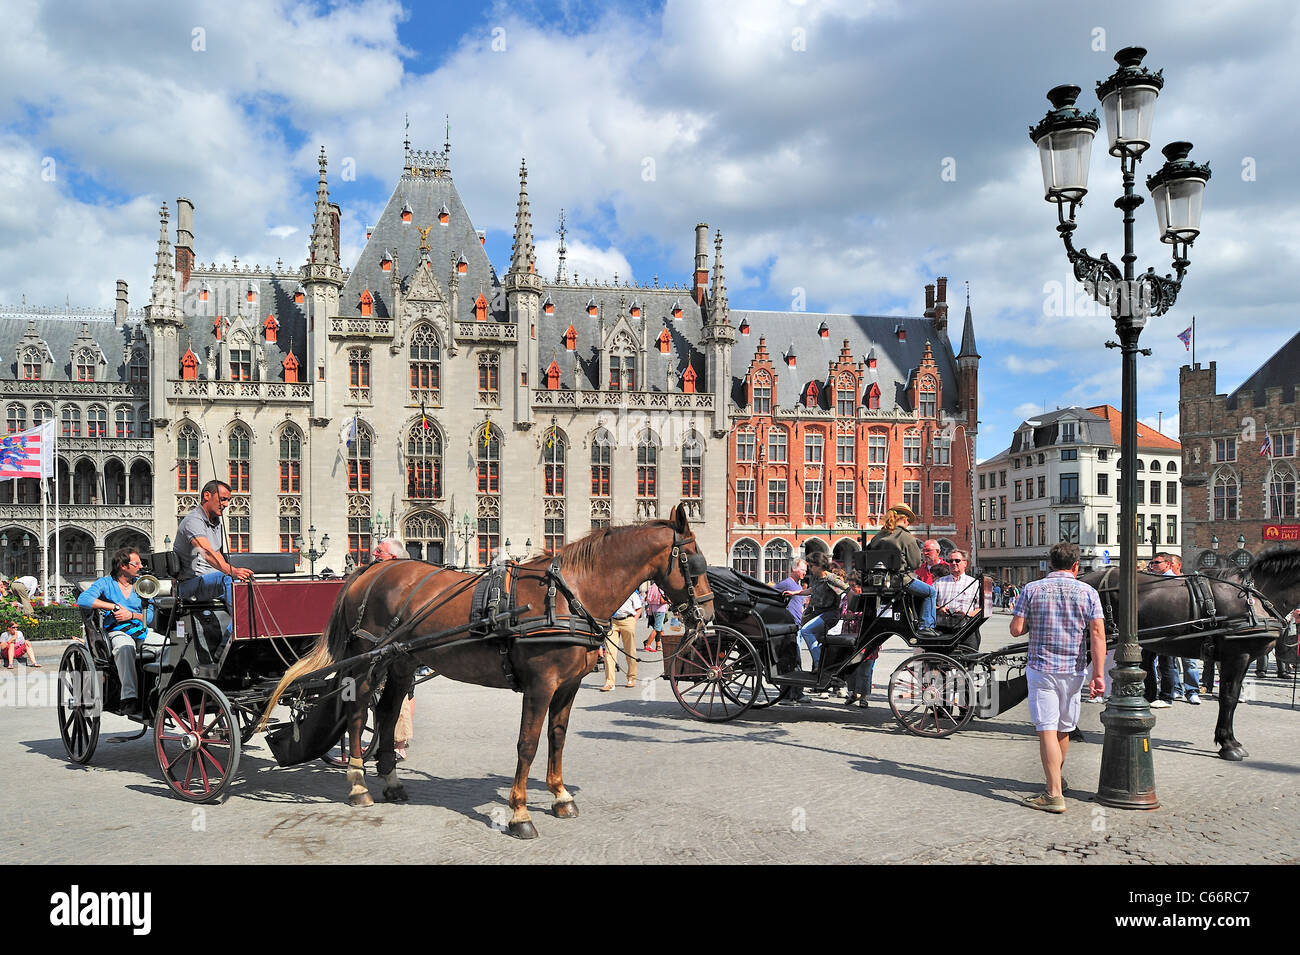 Provinzielle Gericht und Touristen in Pferdekutsche für Sightseeing-Tour auf dem Marktplatz / Grote Markt in Brügge, Belgien Stockfoto